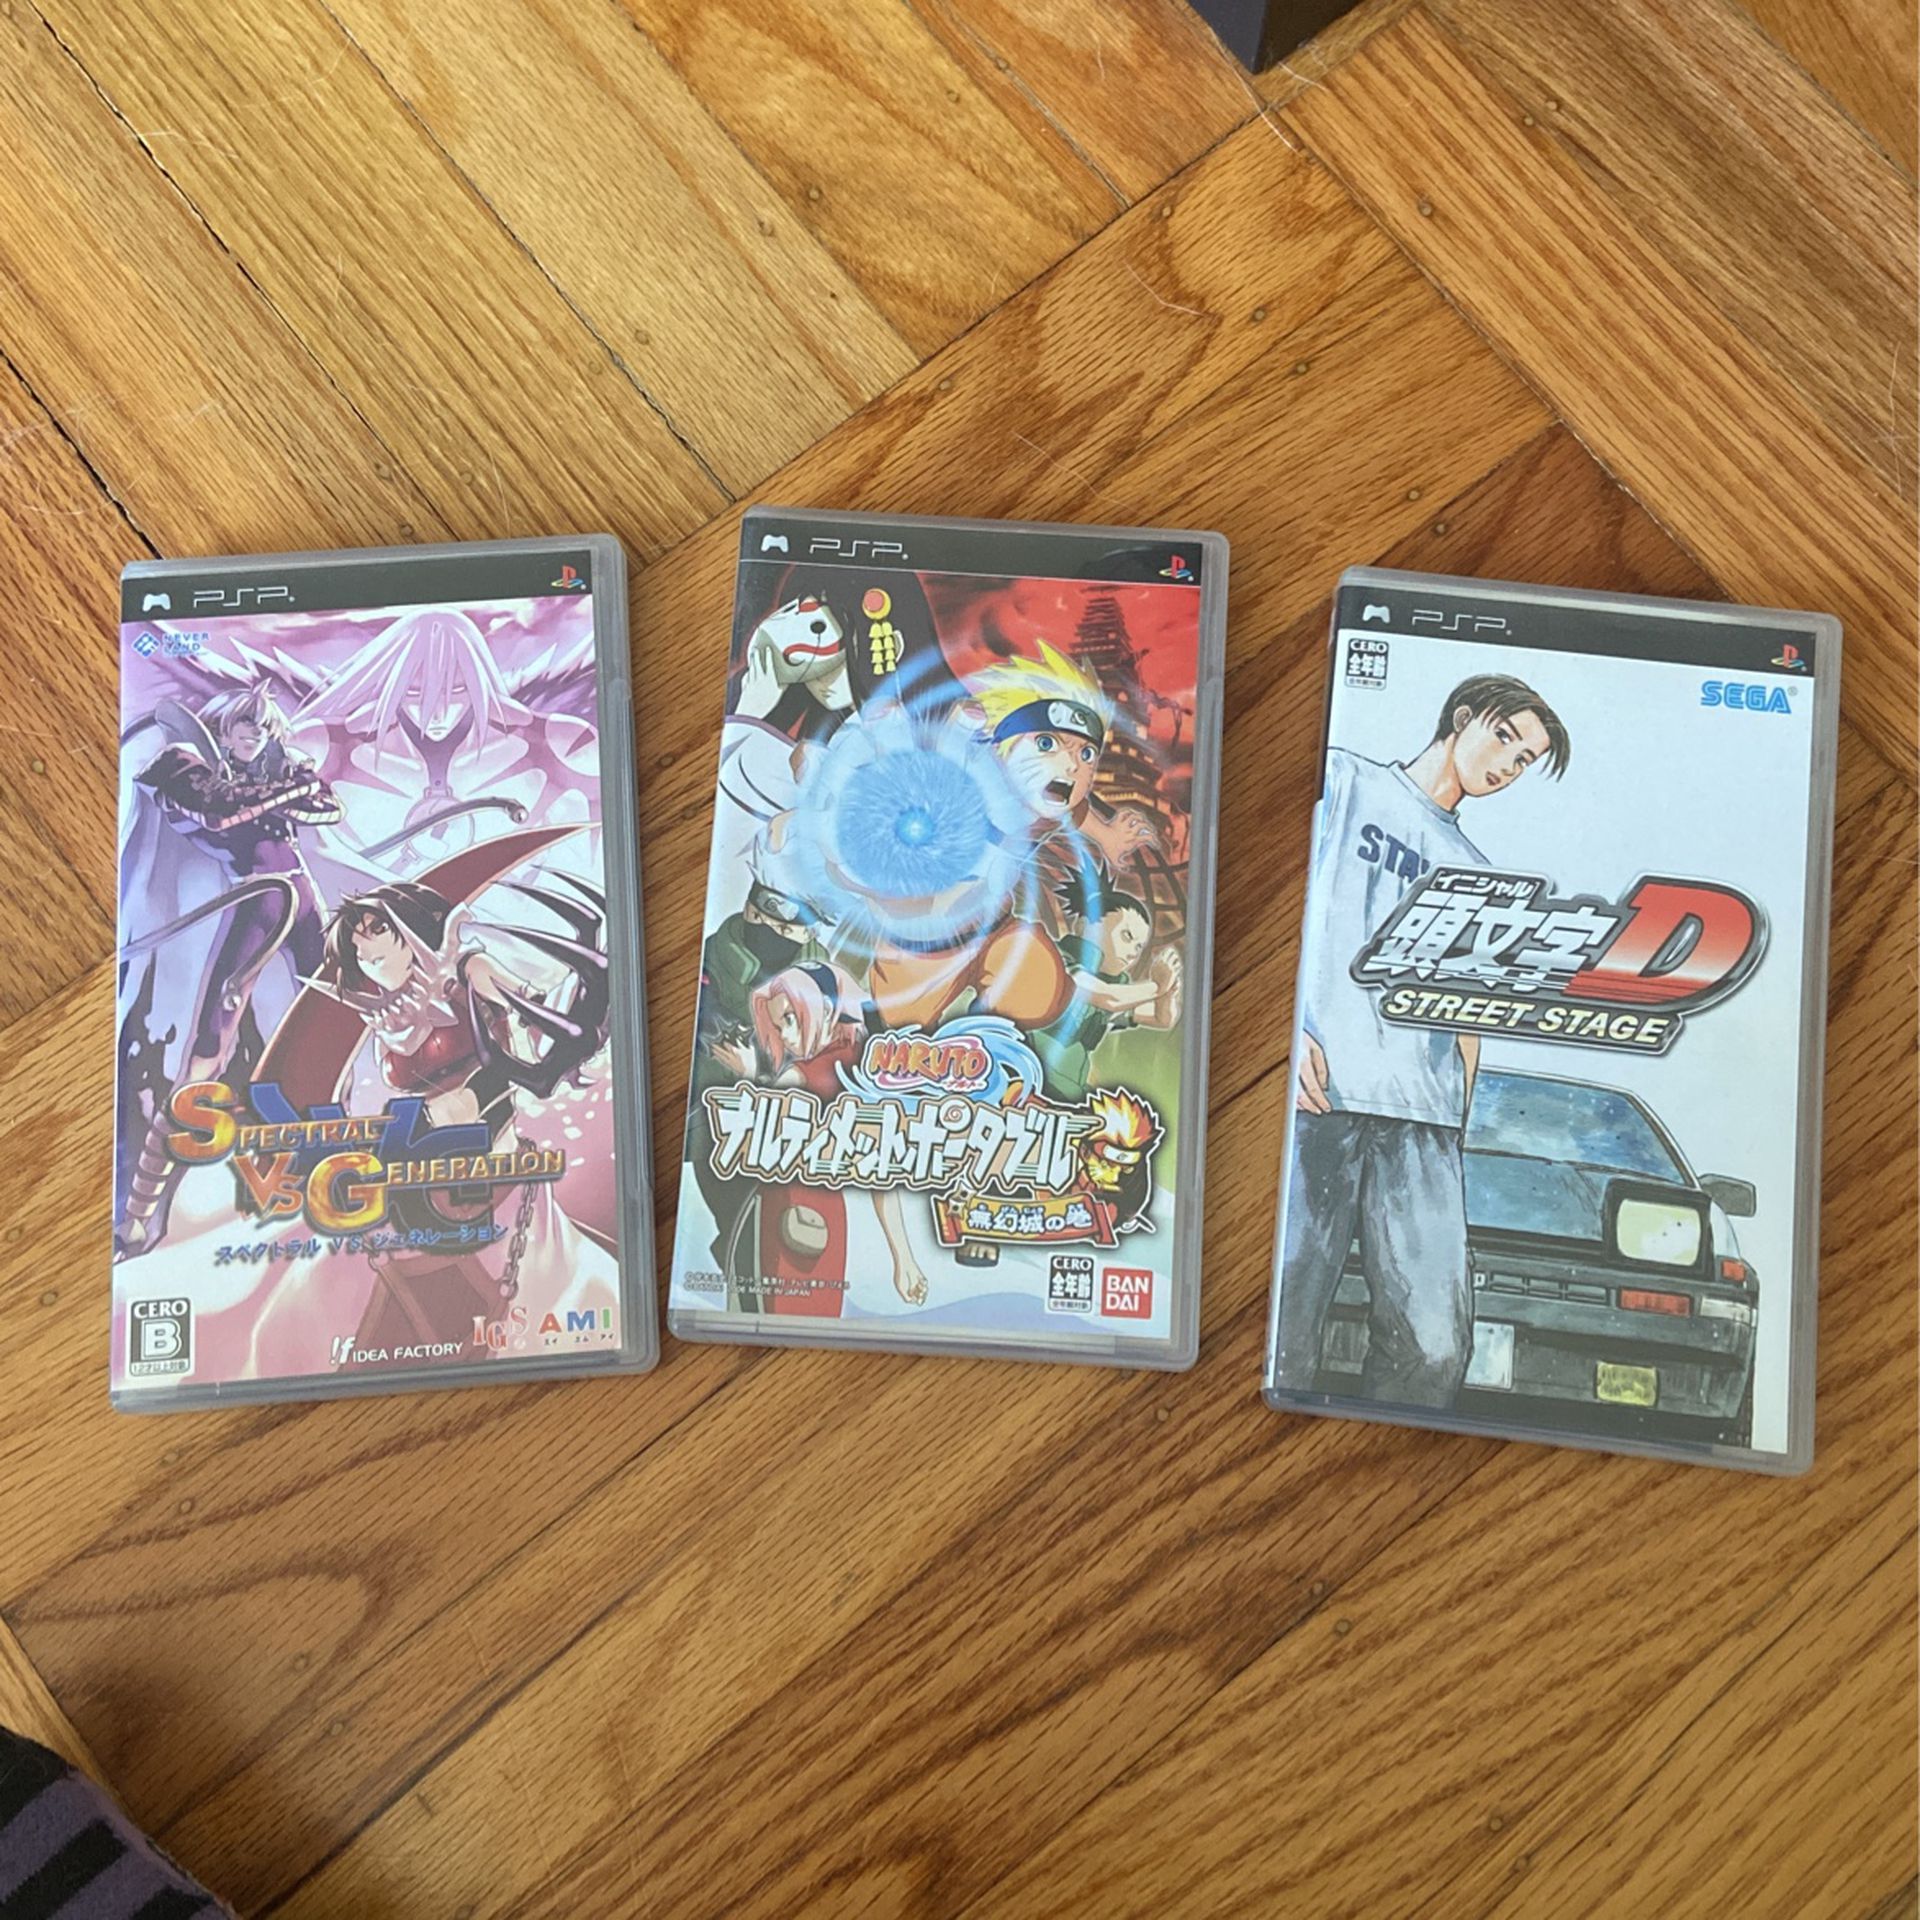 Japanese PSP games